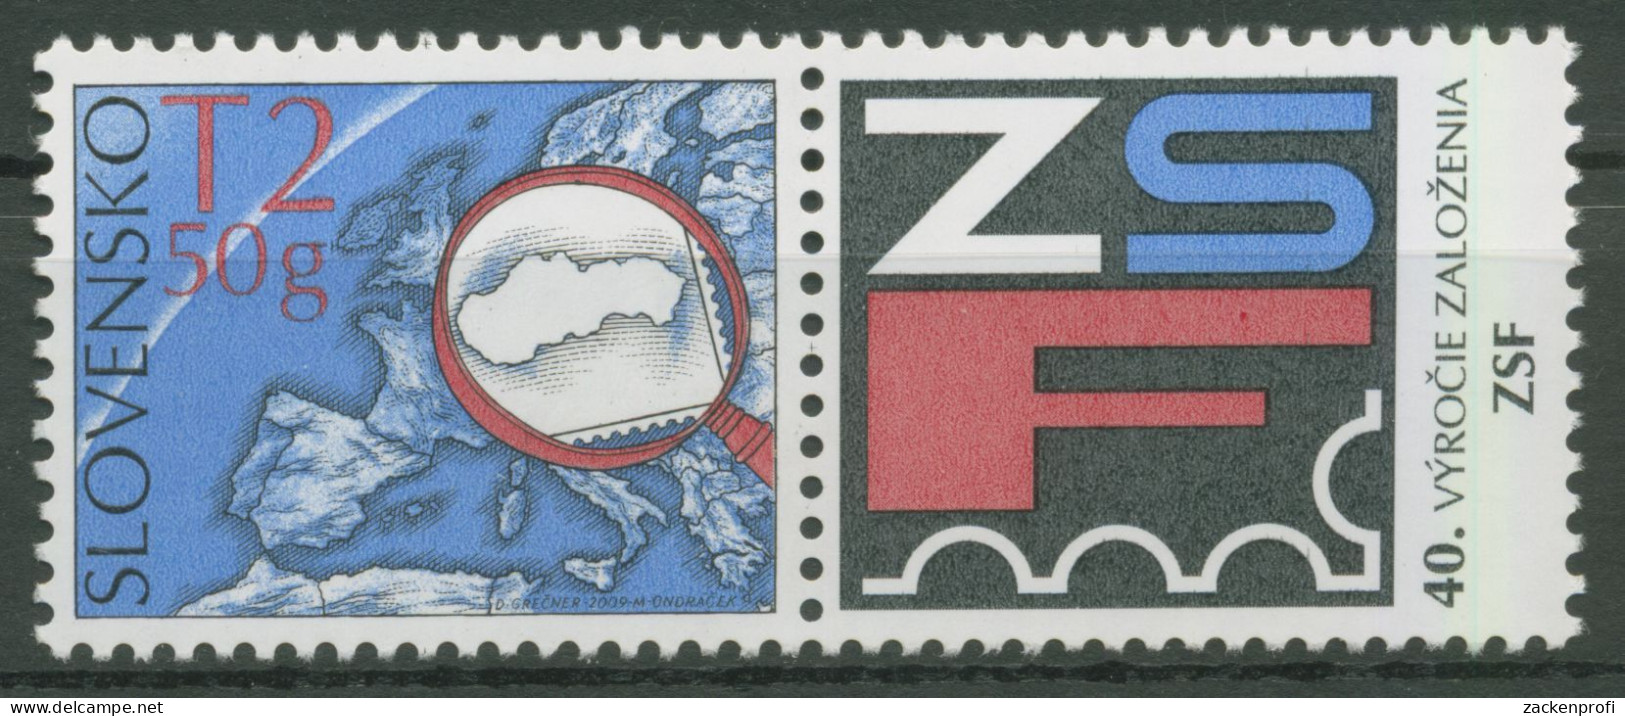 Slowakei 2009 Philatelistenverband 613 Zf Postfrisch - Unused Stamps